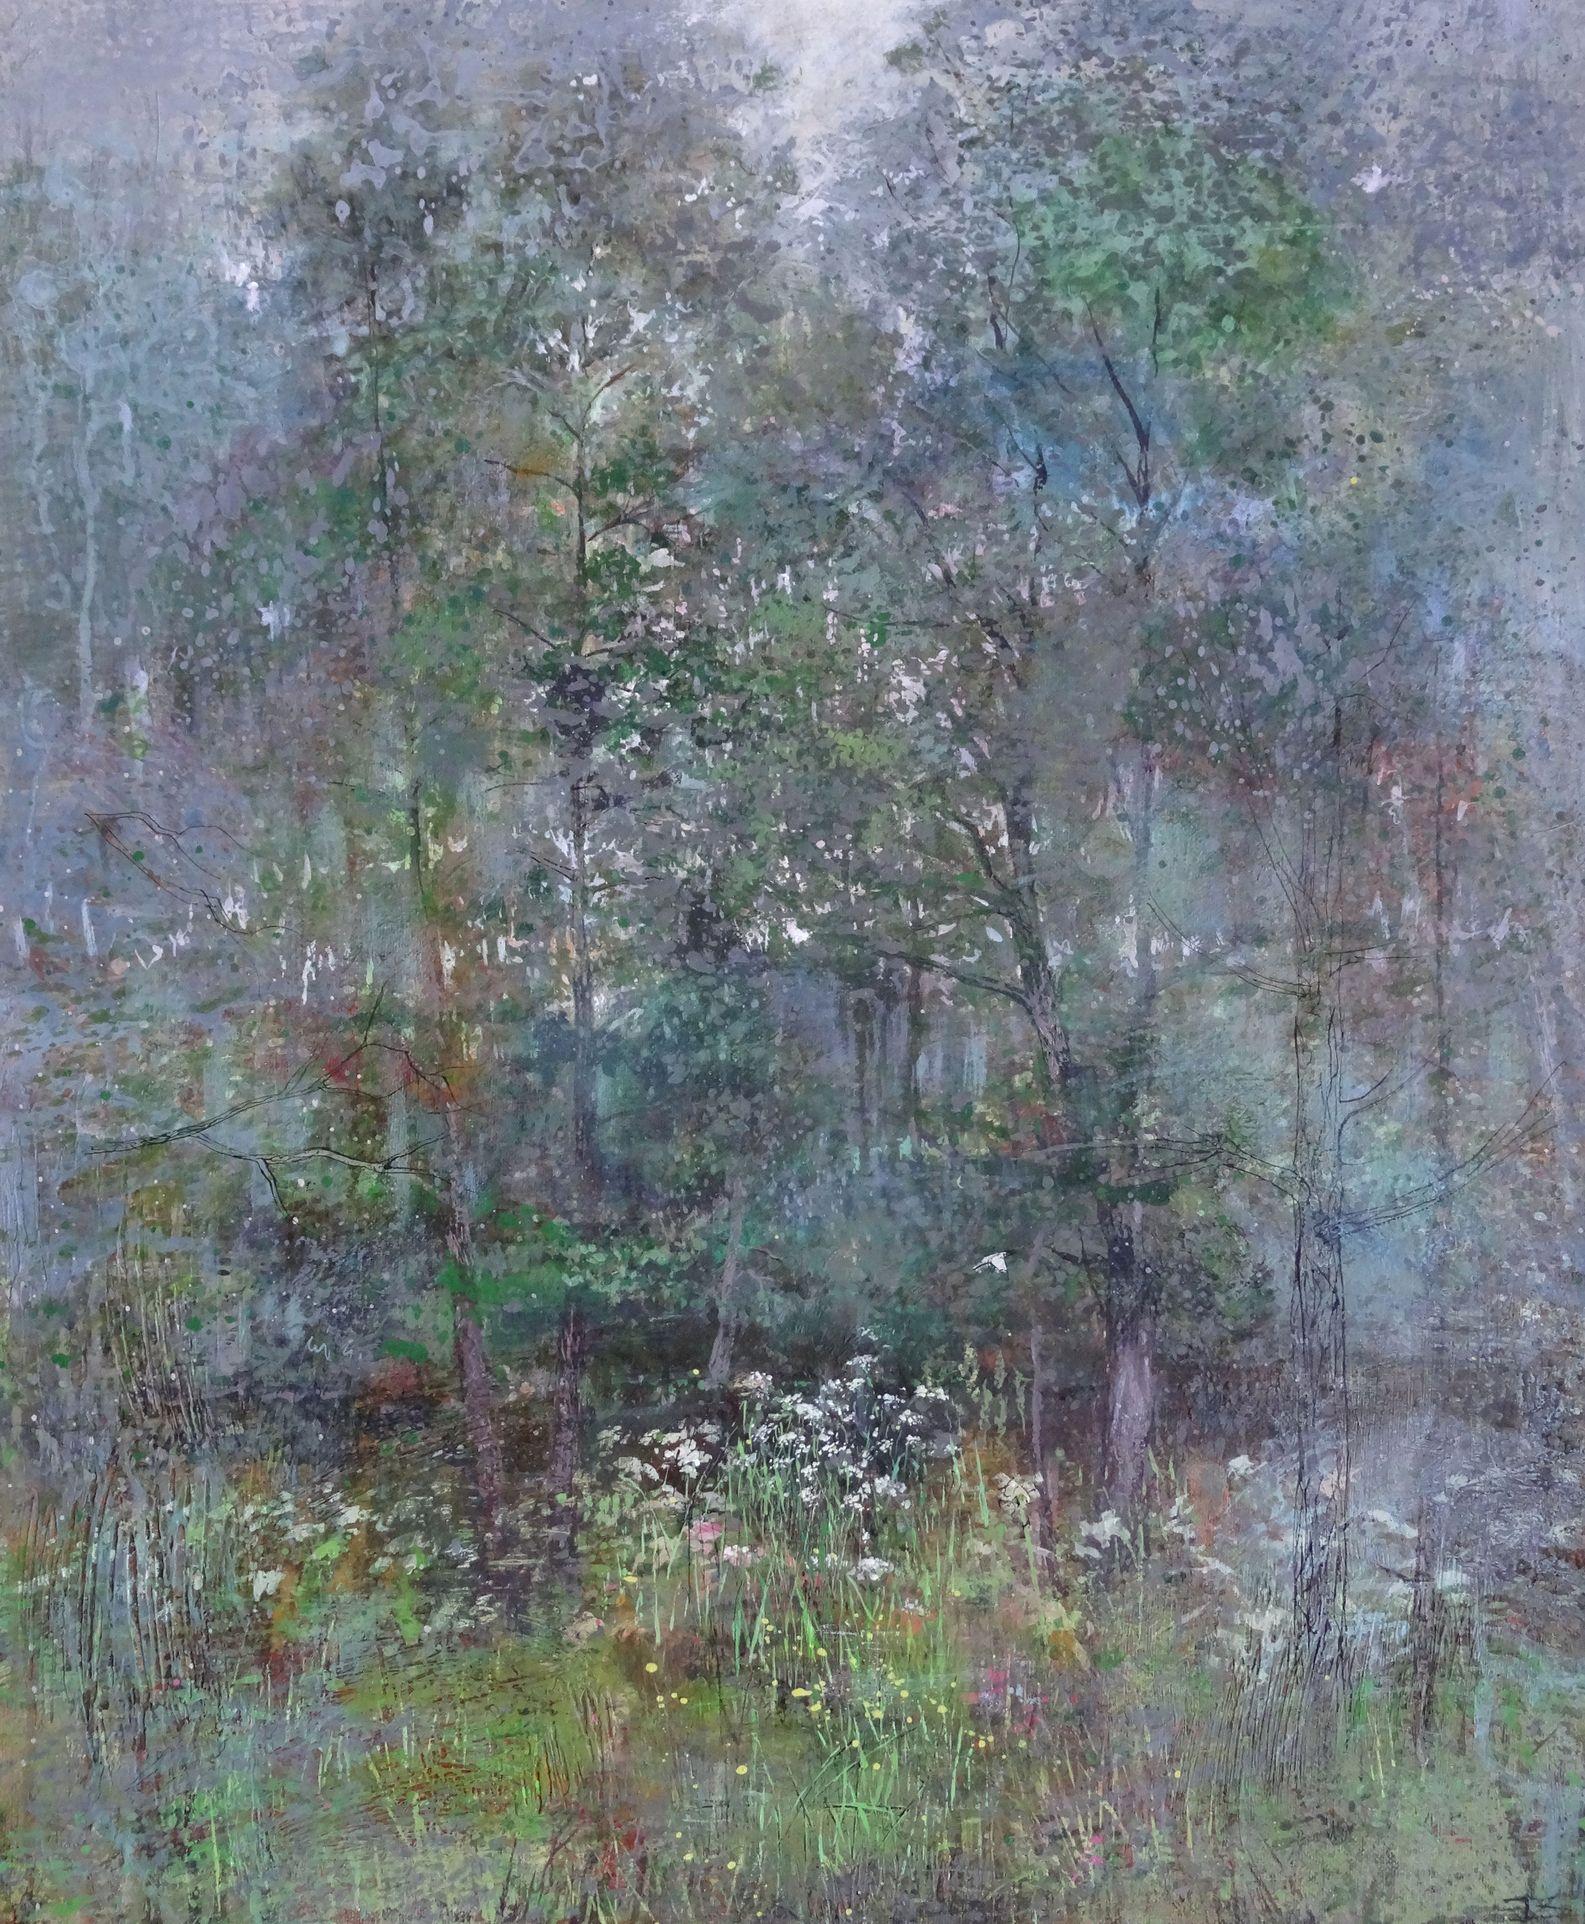 Landscape Painting Janis Zingitis - « It's raining like in the Midsummer », 2017, techniques mixtes sur toile, 60x50 cm